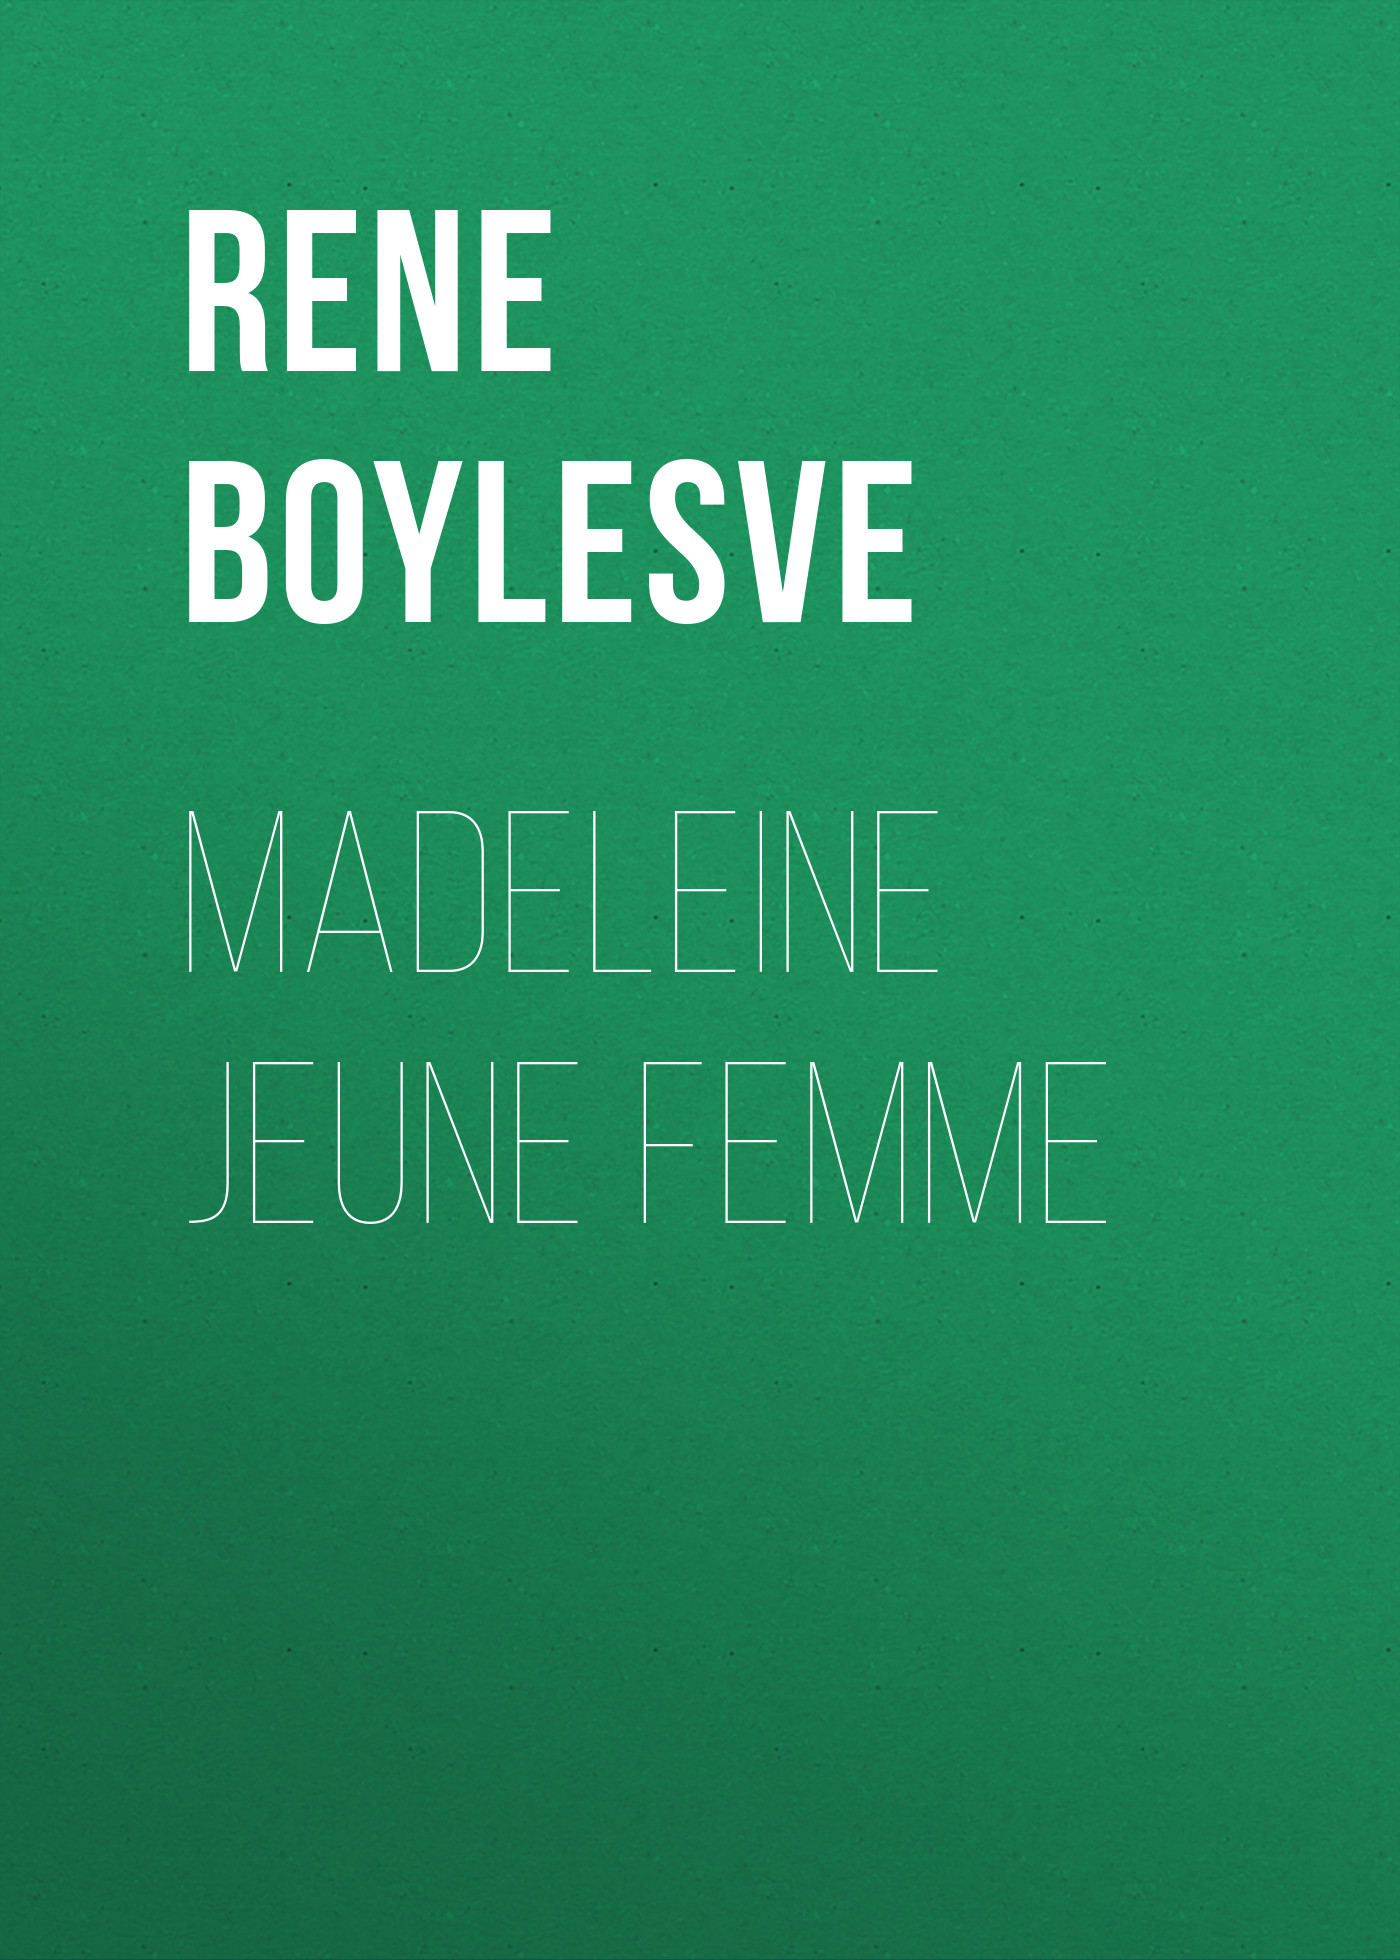 Книга Madeleine jeune femme из серии , созданная René Boylesve, может относится к жанру Зарубежная старинная литература, Зарубежная классика. Стоимость электронной книги Madeleine jeune femme с идентификатором 24179620 составляет 0 руб.